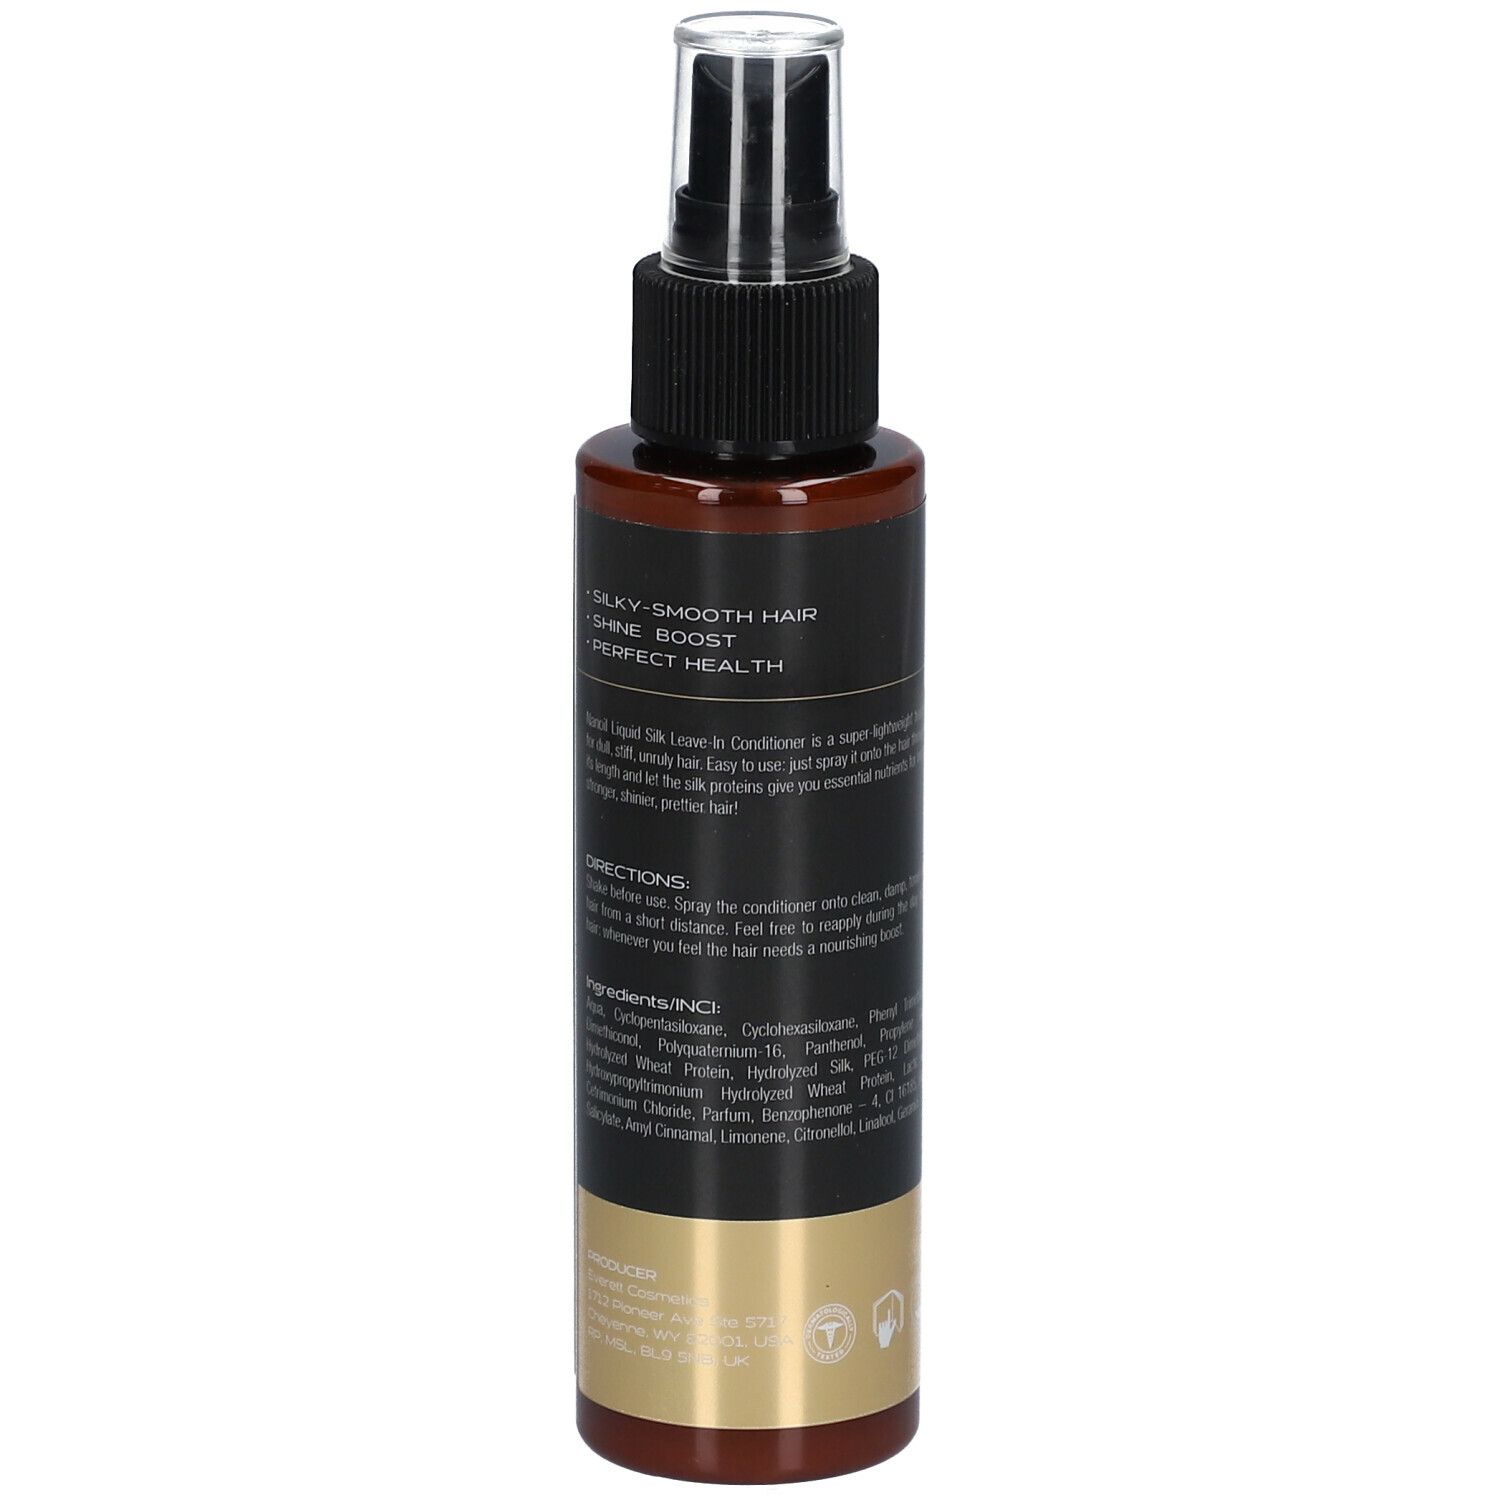 NANOIL® Liquid Silk Hair Conditioner